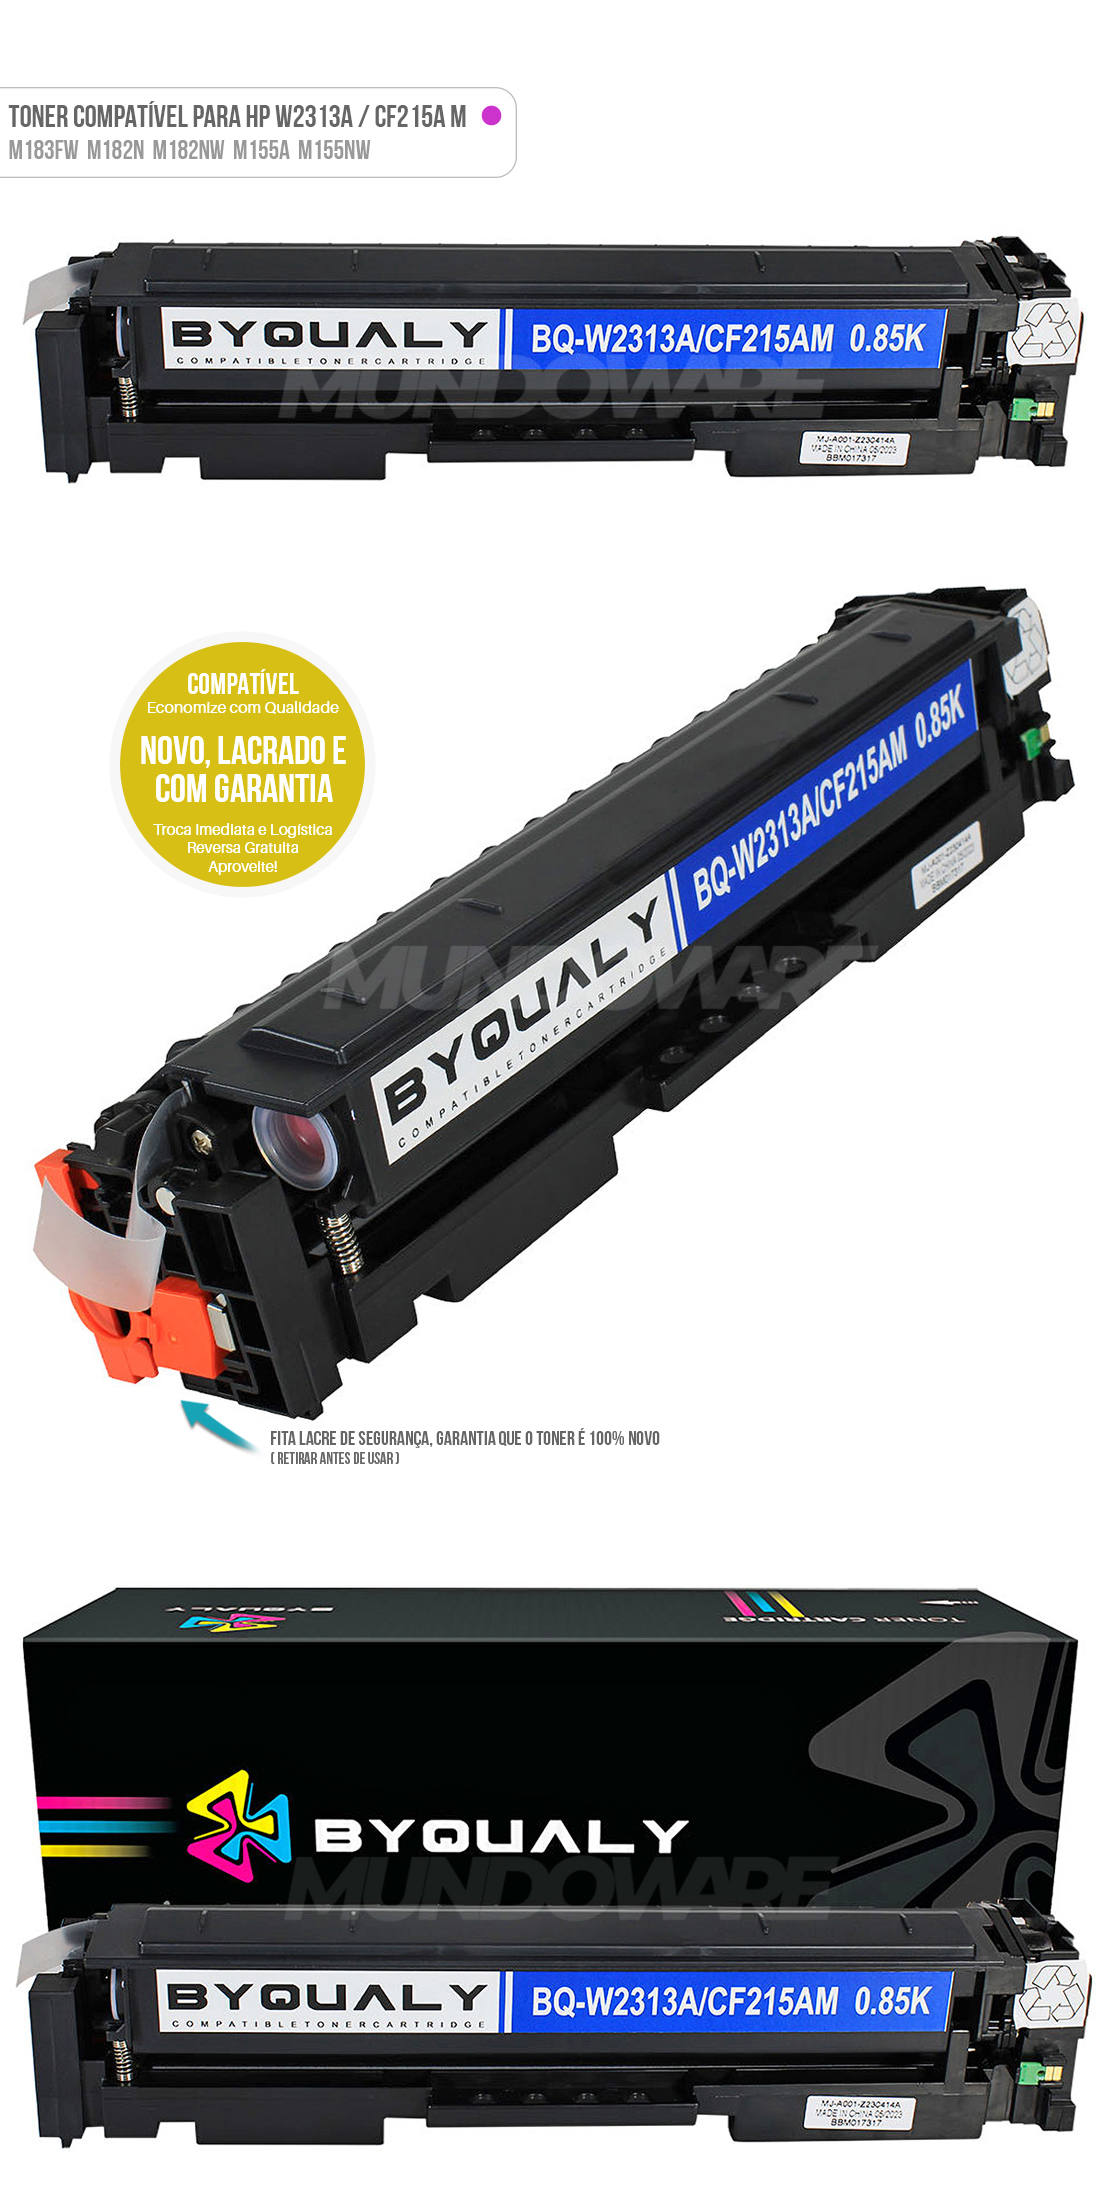 Toner Magenta Compatível para HP W2313A CF215A para Color LaserJet Pro MFP M183fw M182n M182nw M155a M155nw 183fw 850